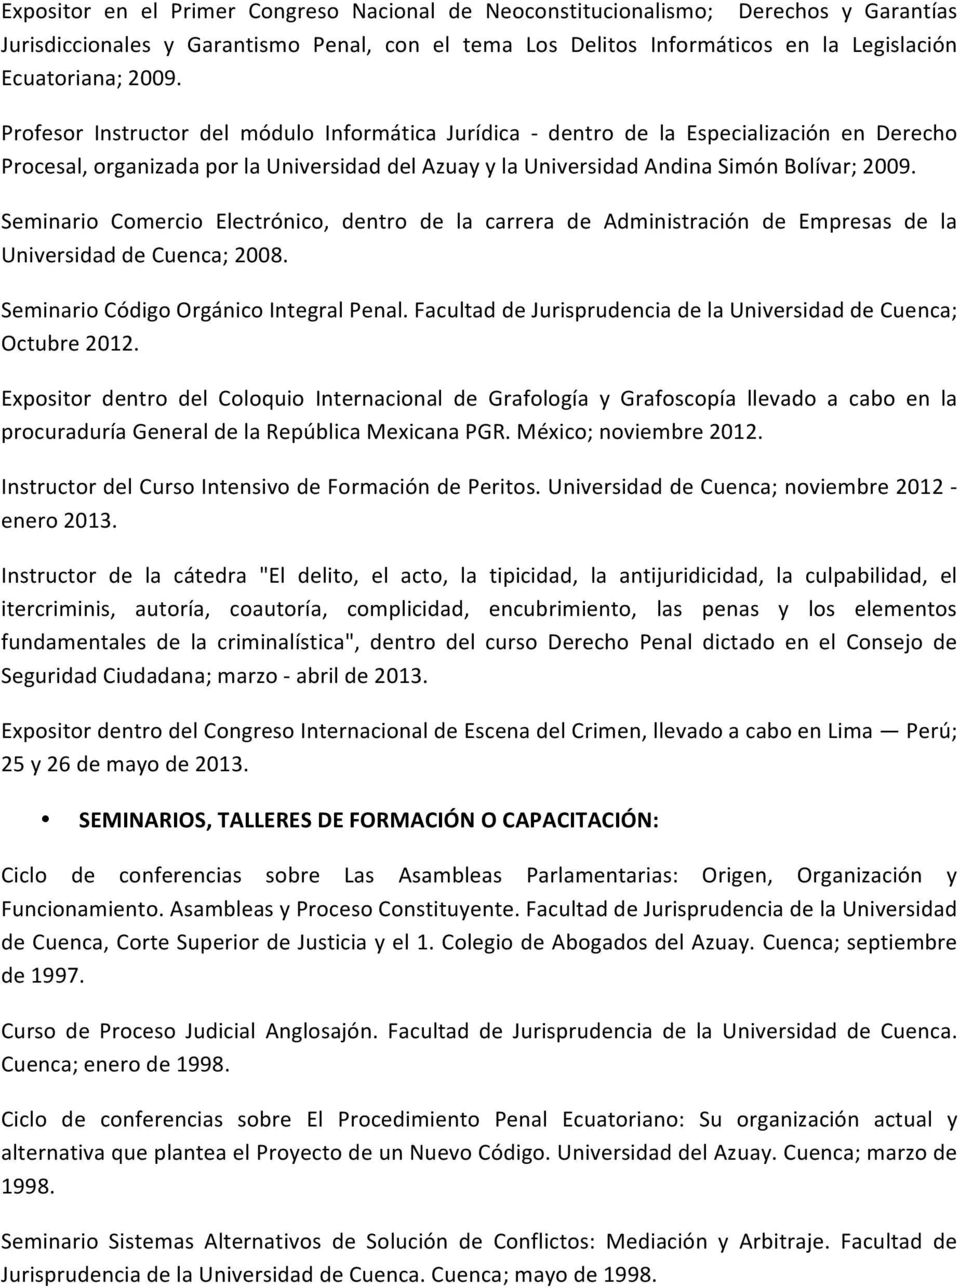 Seminario Comercio Electrónico, dentro de la carrera de Administración de Empresas de la Universidad de Cuenca; 2008. Seminario Código Orgánico Integral Penal.